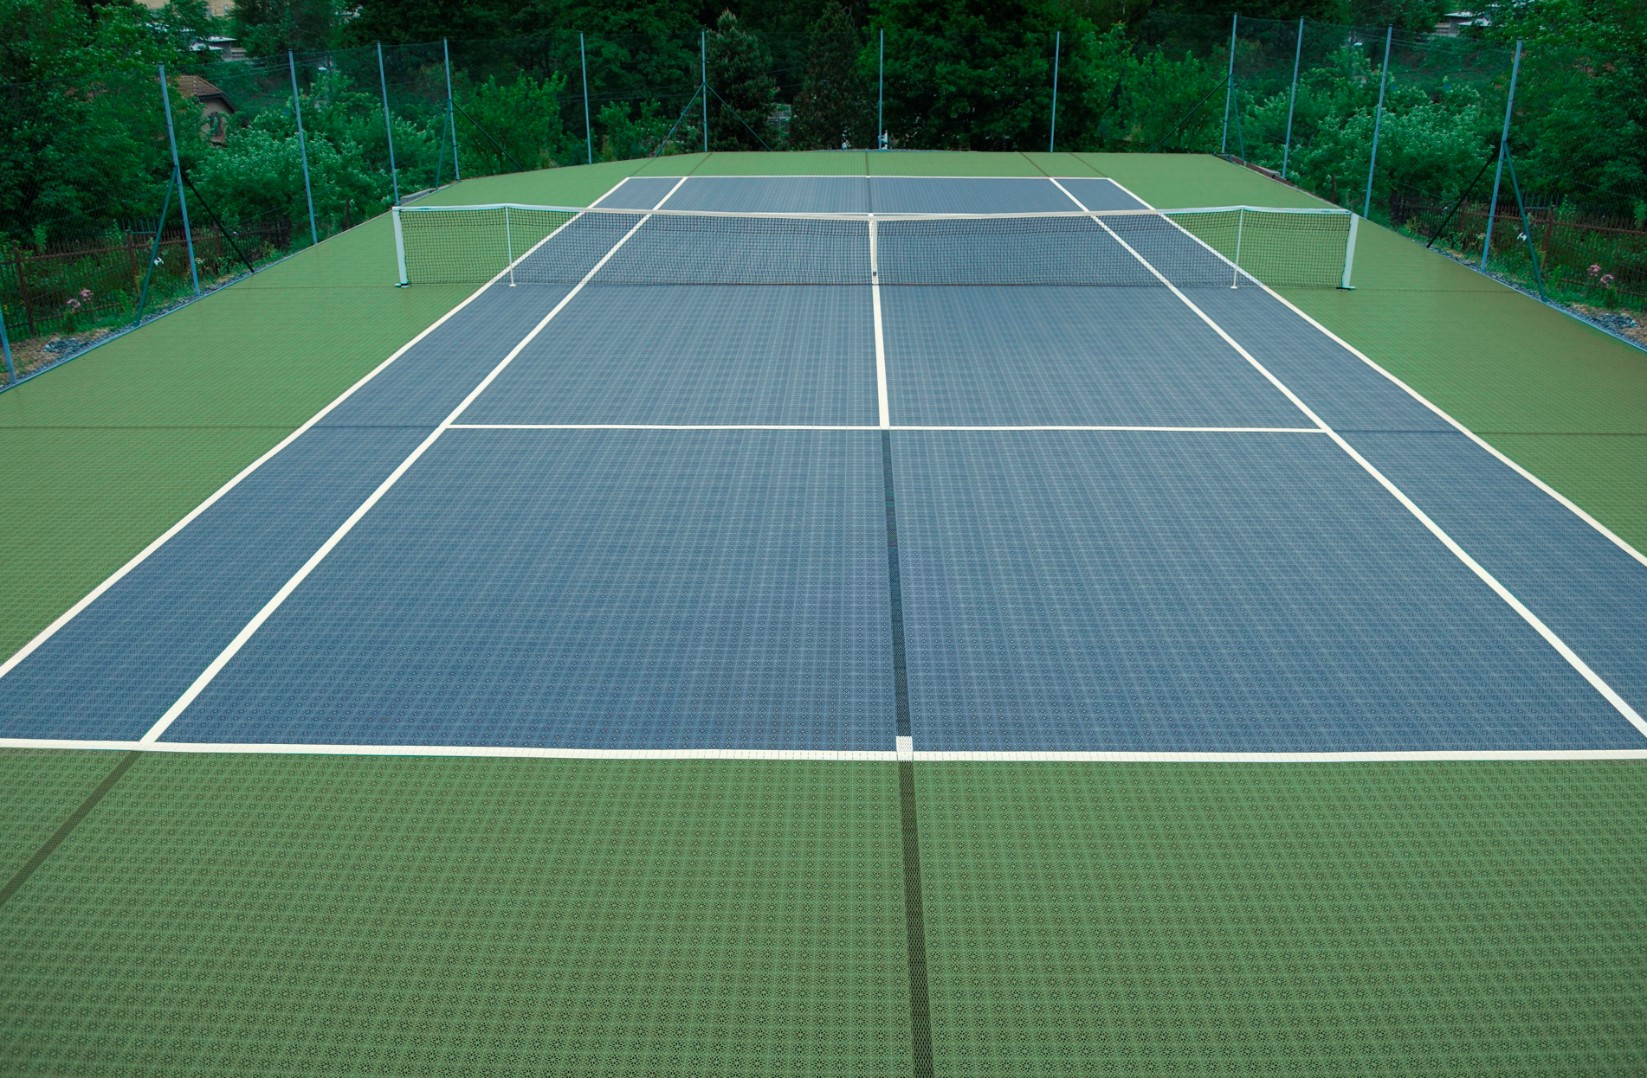 Горизонт покрытий. Покрытие теннис корт Хард. Сетка теннисная Court Royal tn20 (корт Роял, тн20) (черная). Покрытие теннисного корта. Резиновое покрытие для теннисного корта.